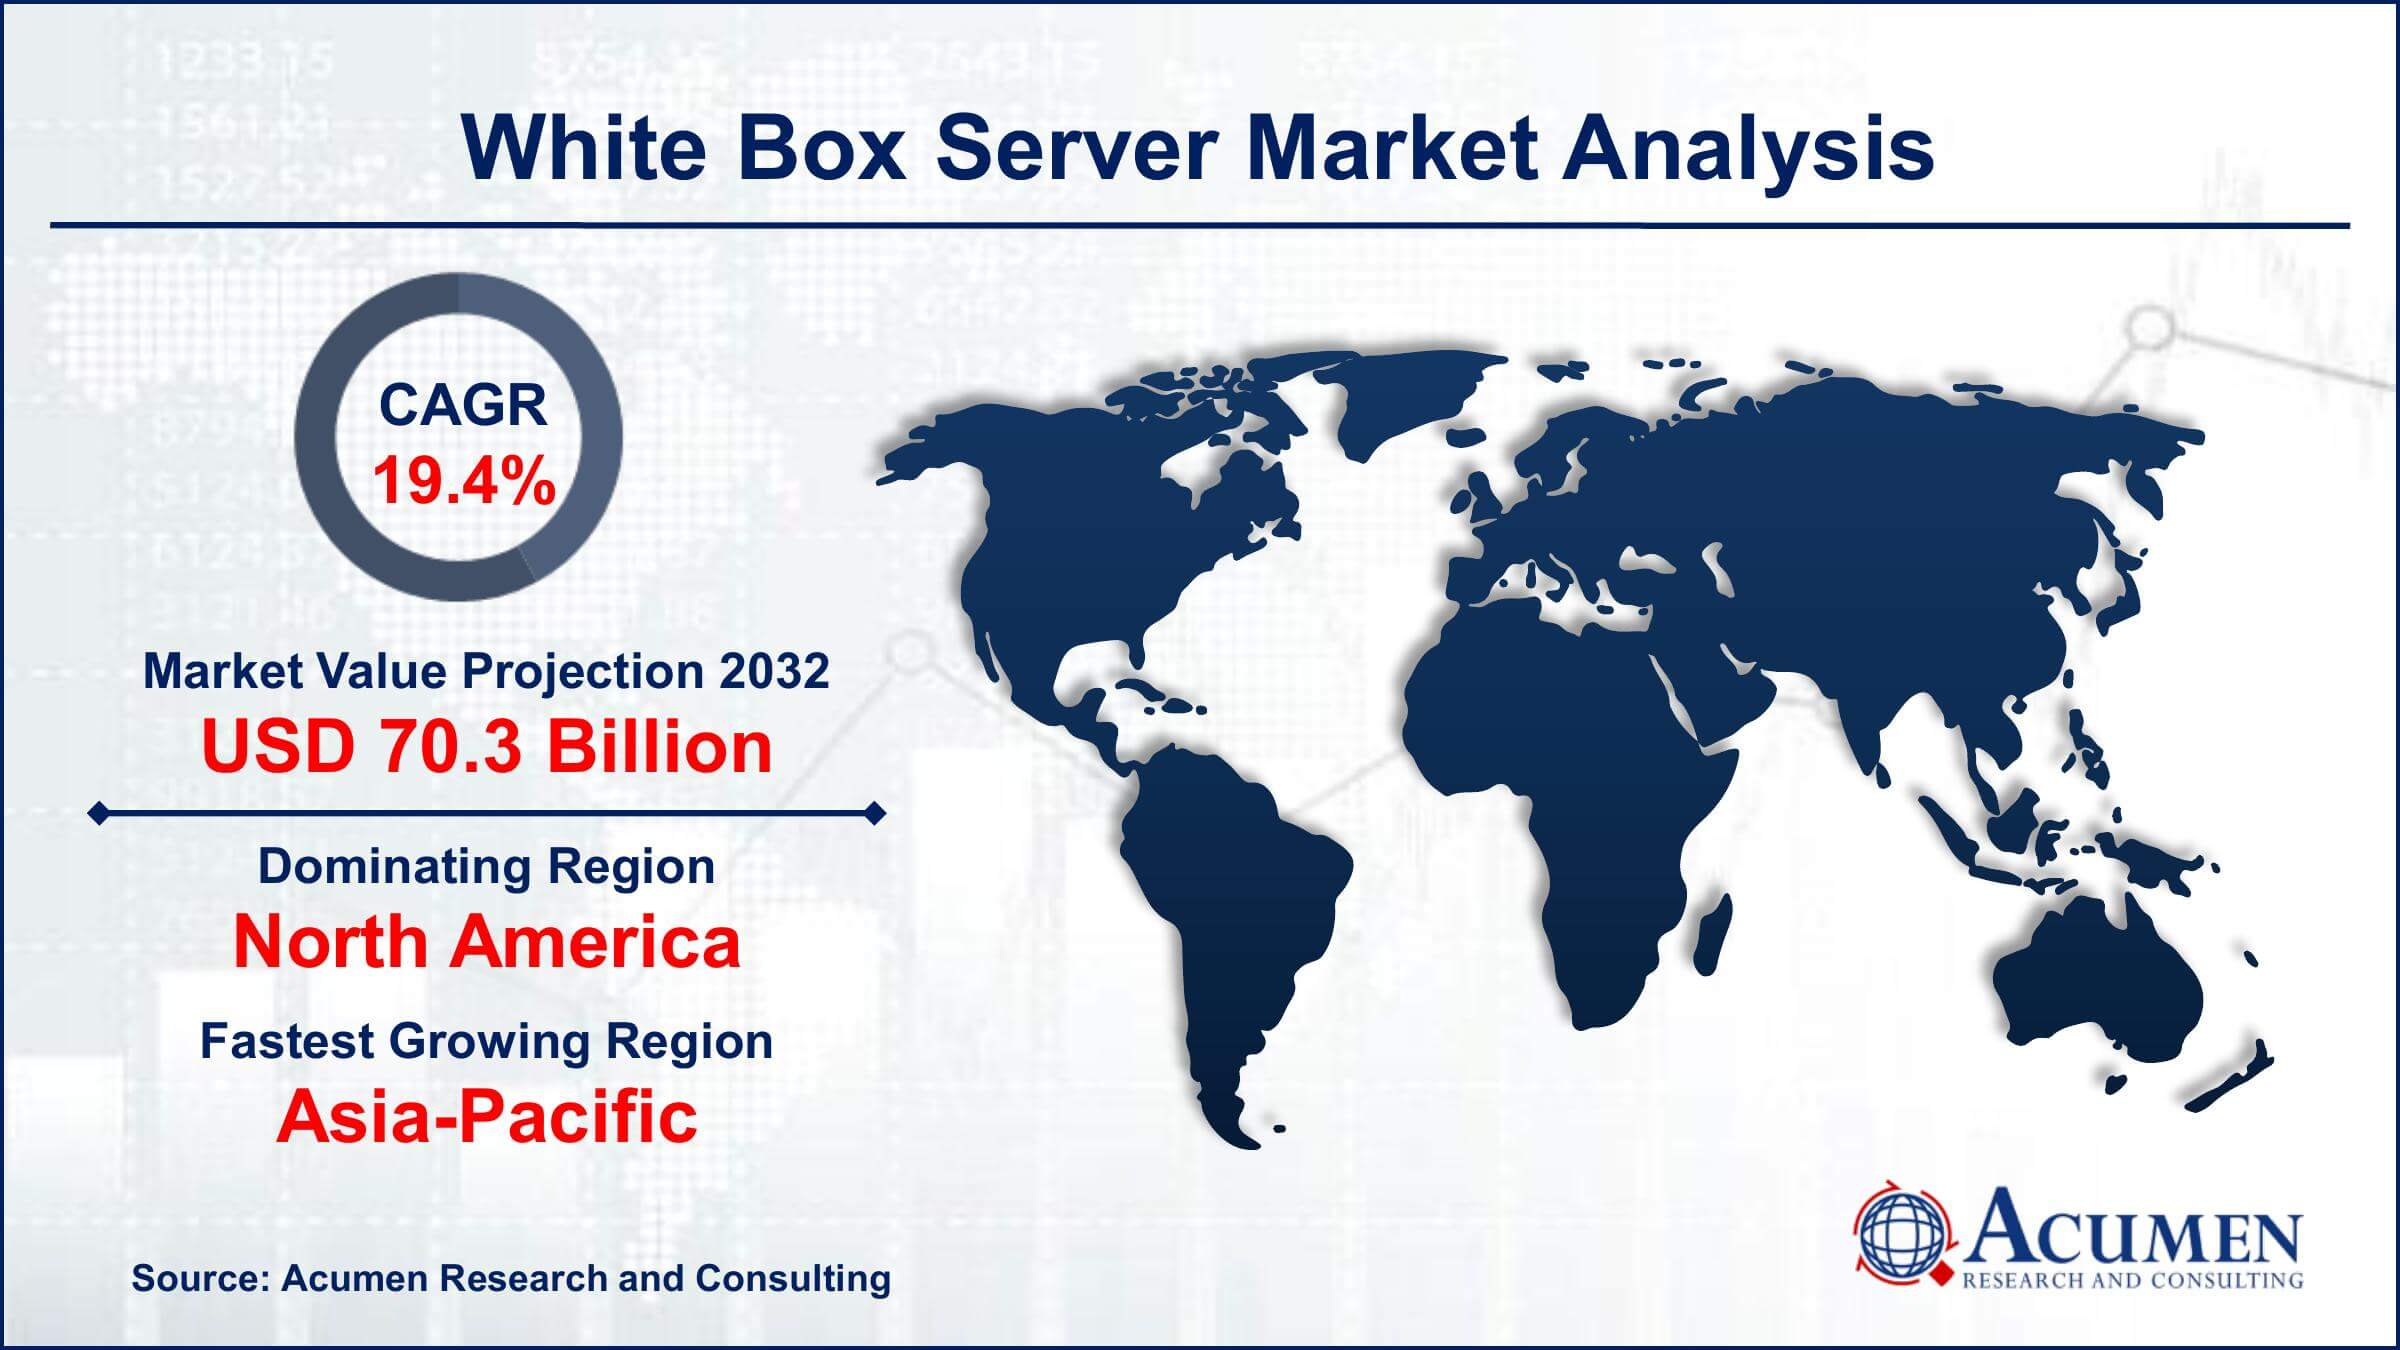 Global White Box Server Market Trends